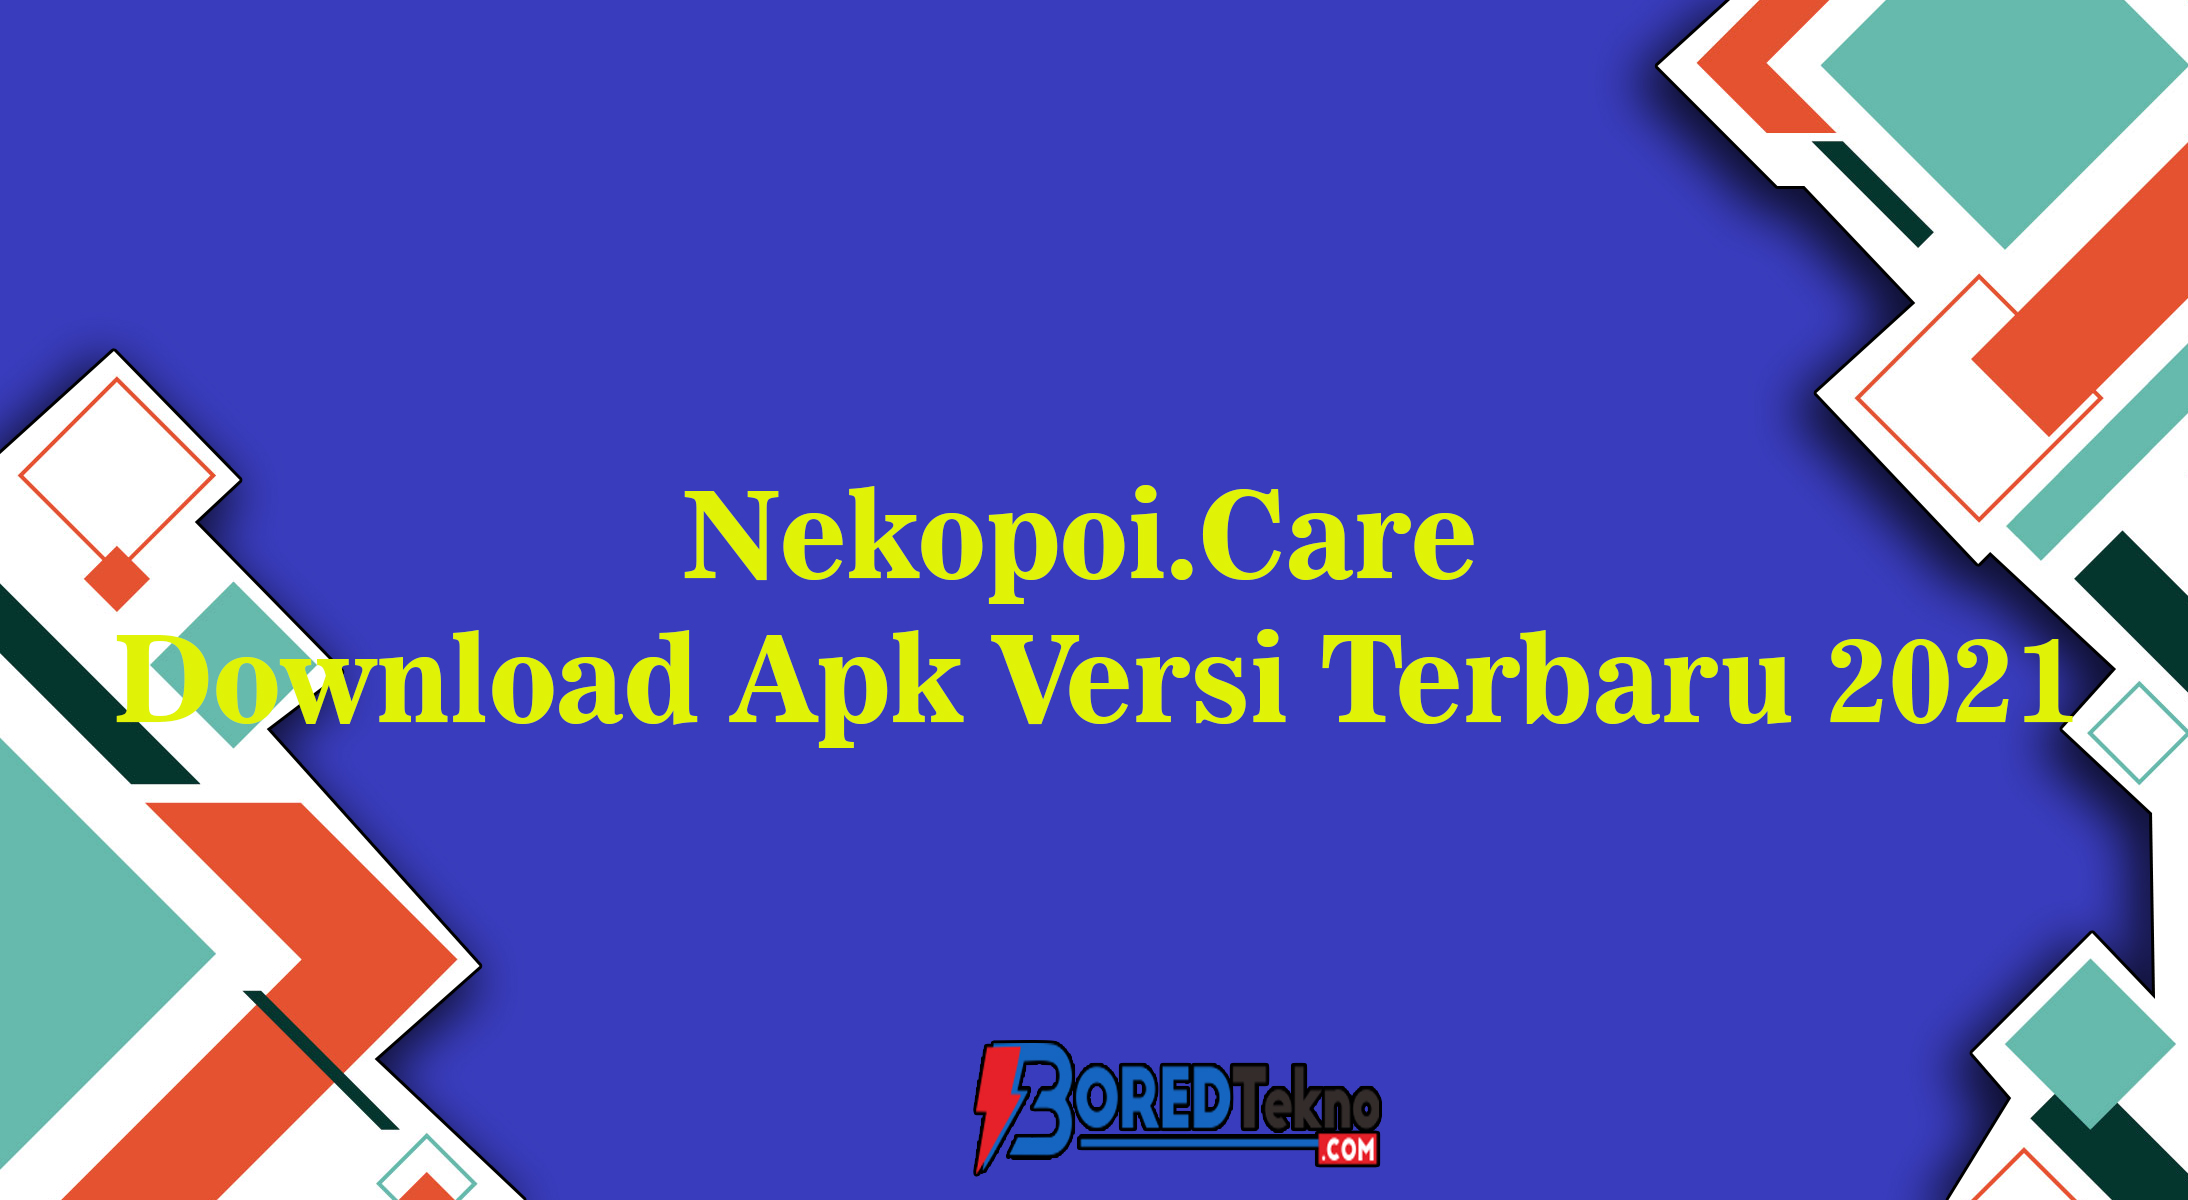 Nekopoi.care download app 2021